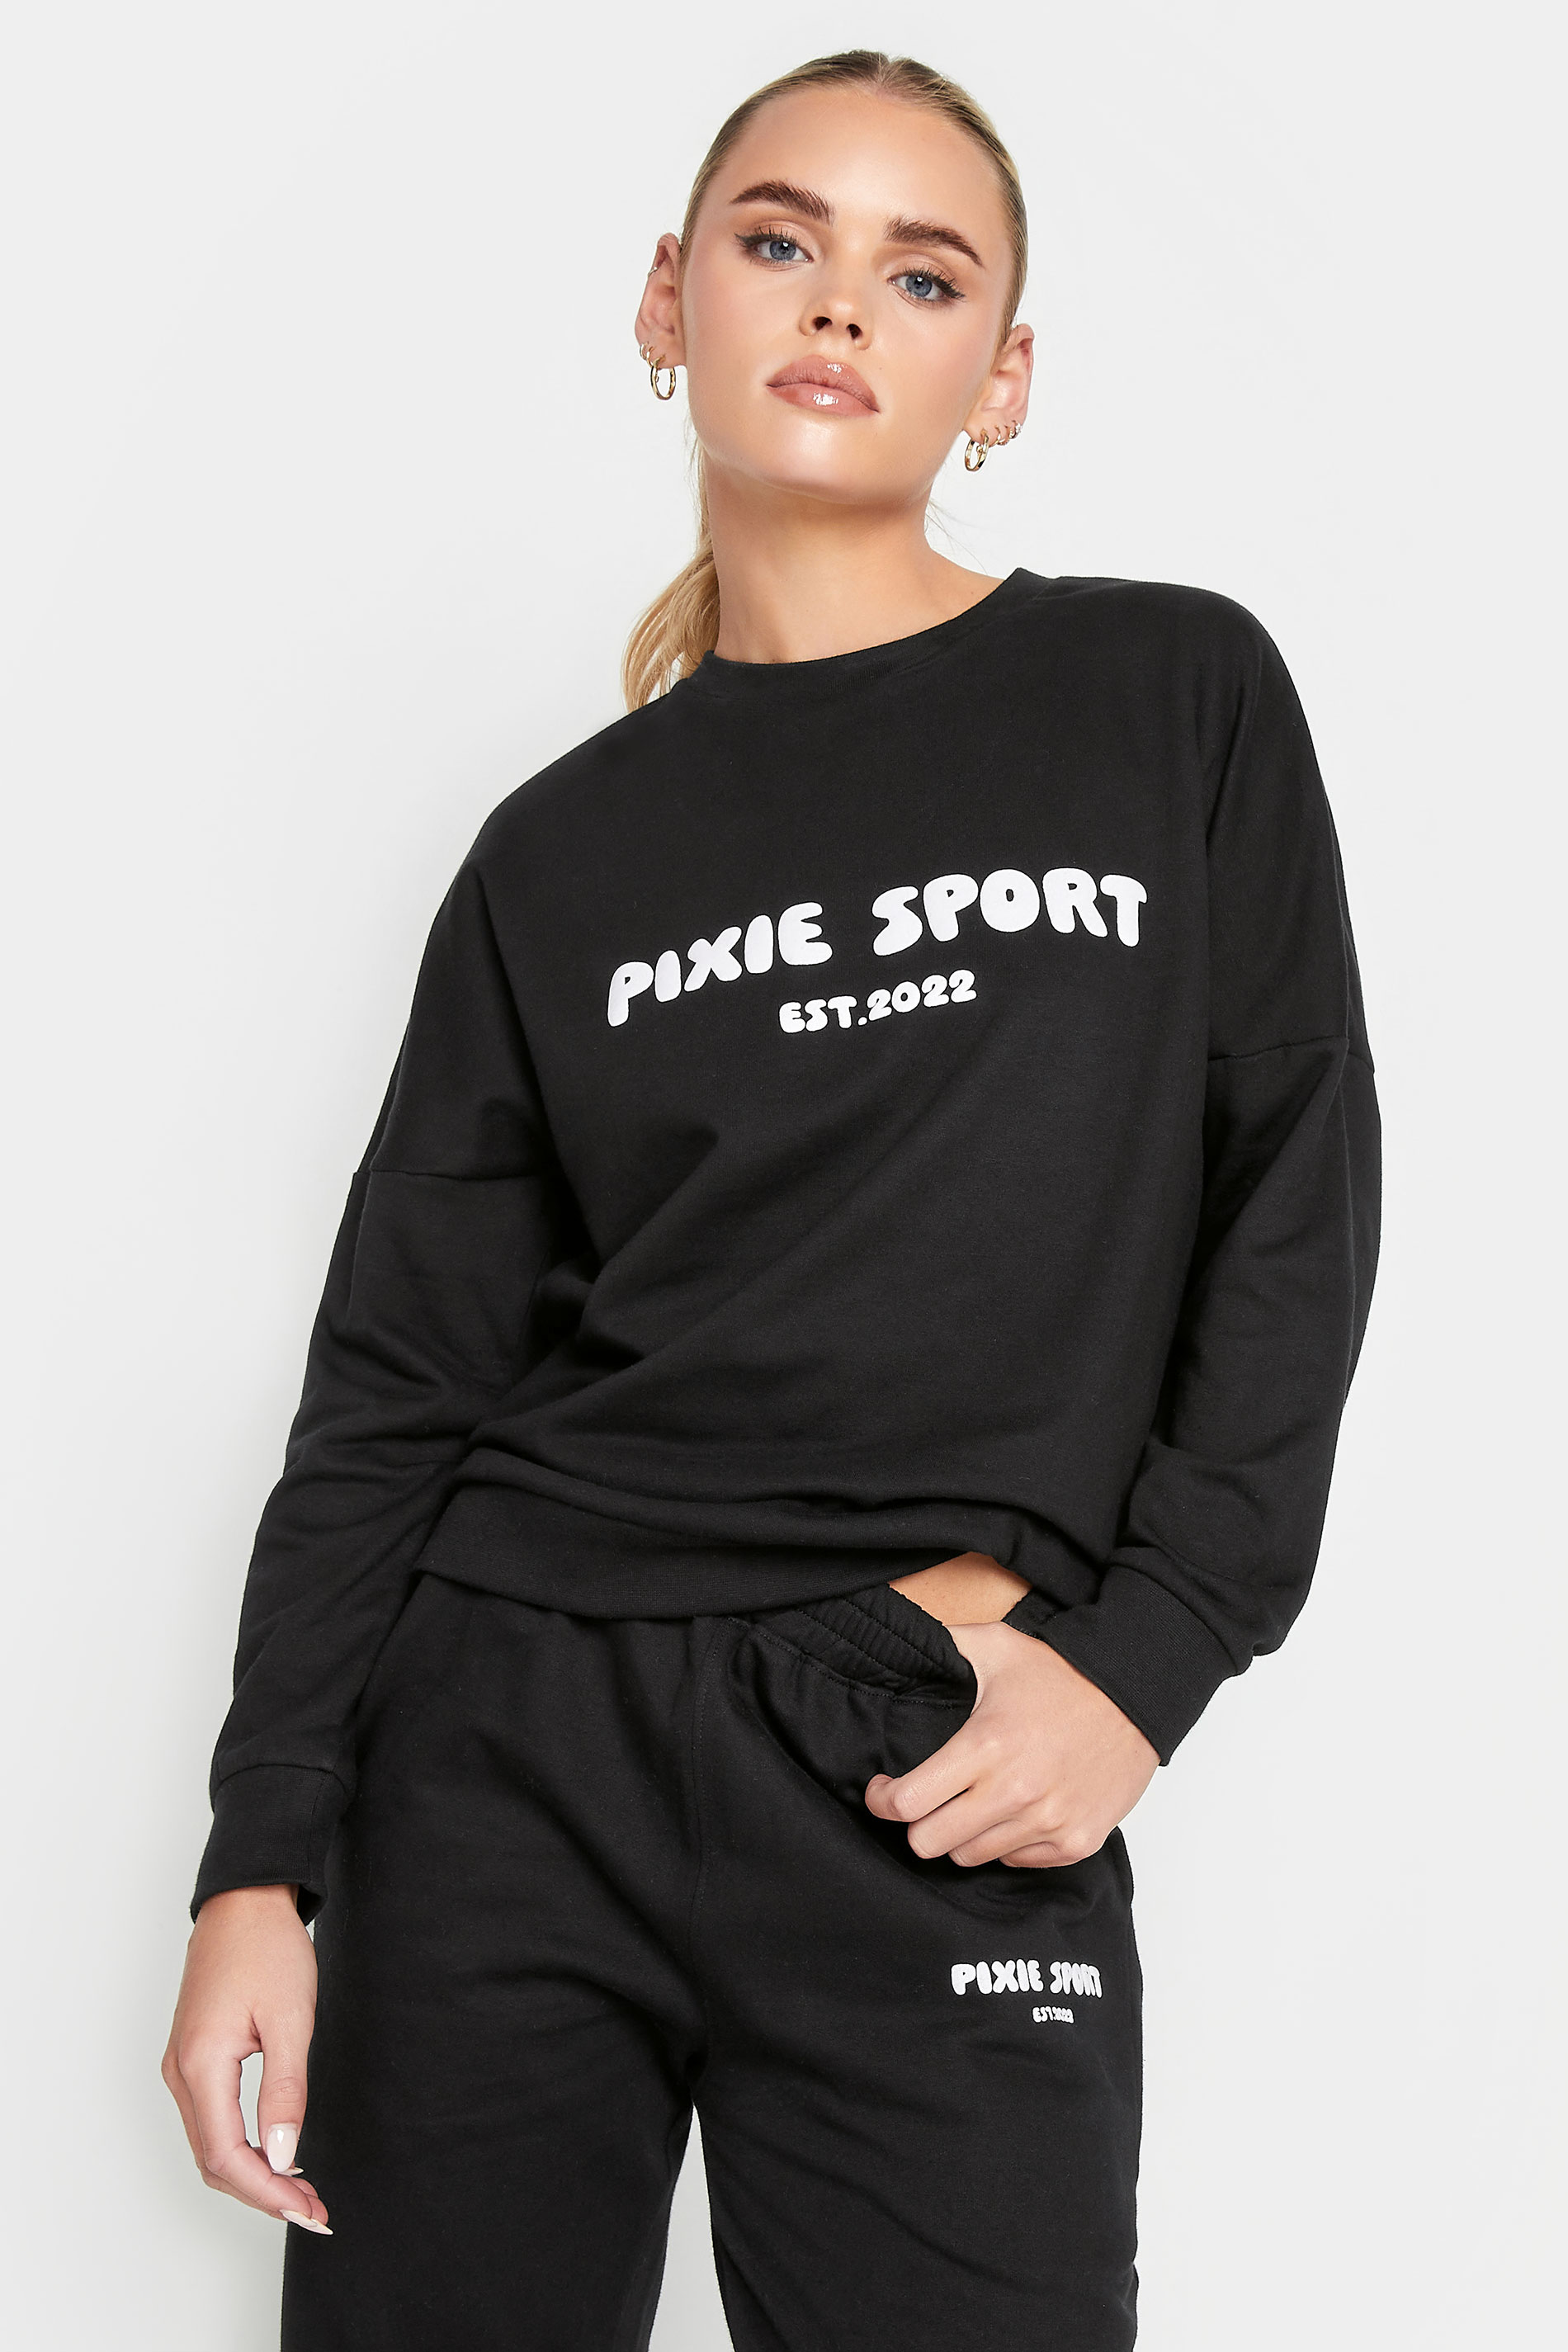 Pixiegirl Black 'Pixie Sport' Slogan Sweatshirt 10 Pixiegirl | Petite Women's Hoodies & Sweatshirts